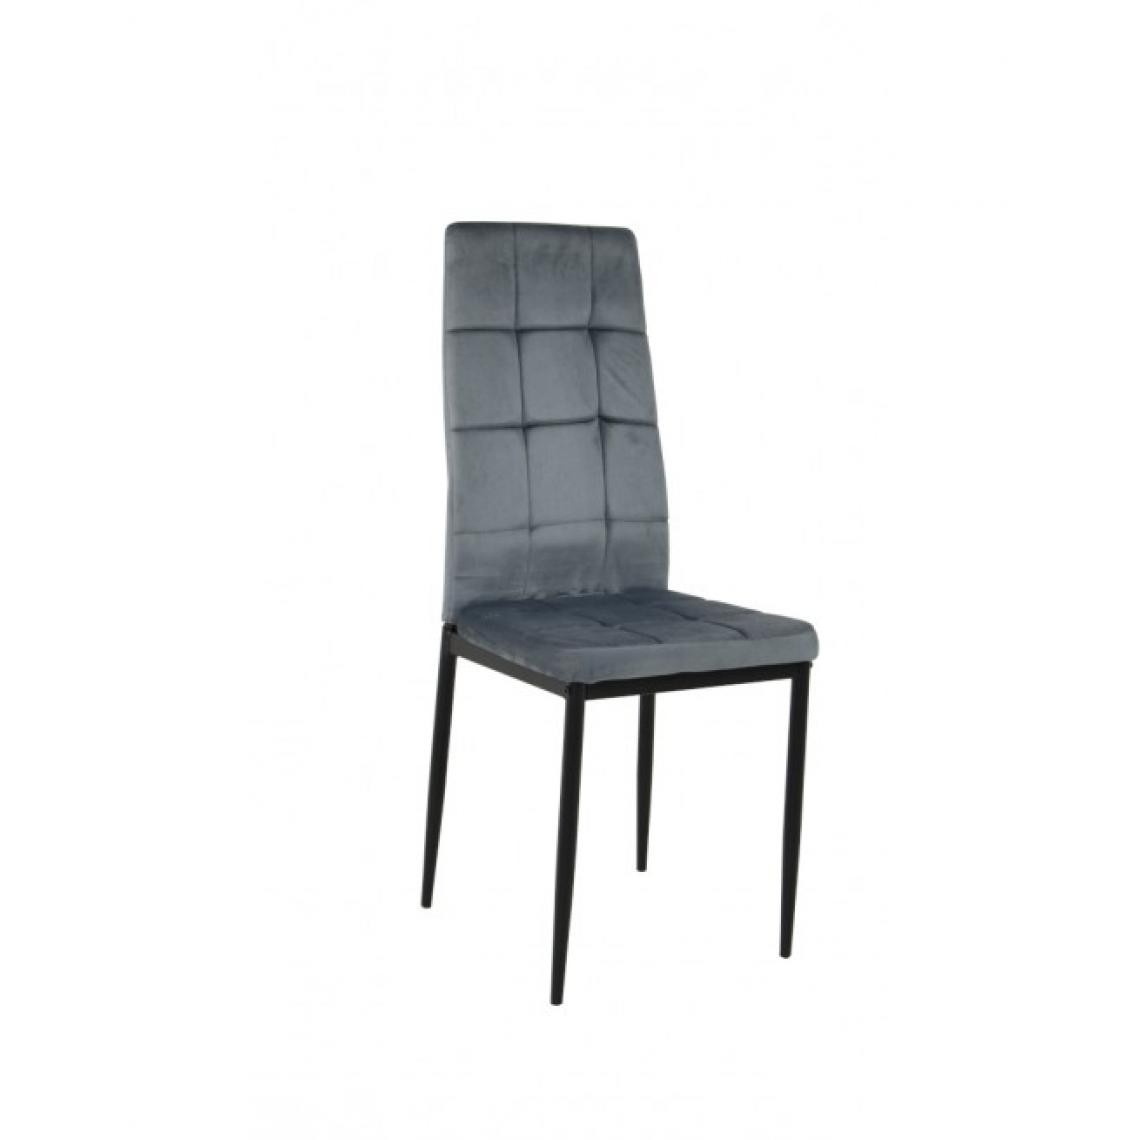 Hucoco - VELA - Chaise rembourrée en velours style moderne salle à manger - 40x98x40 cm - Cadre en métal - Gris - Chaises